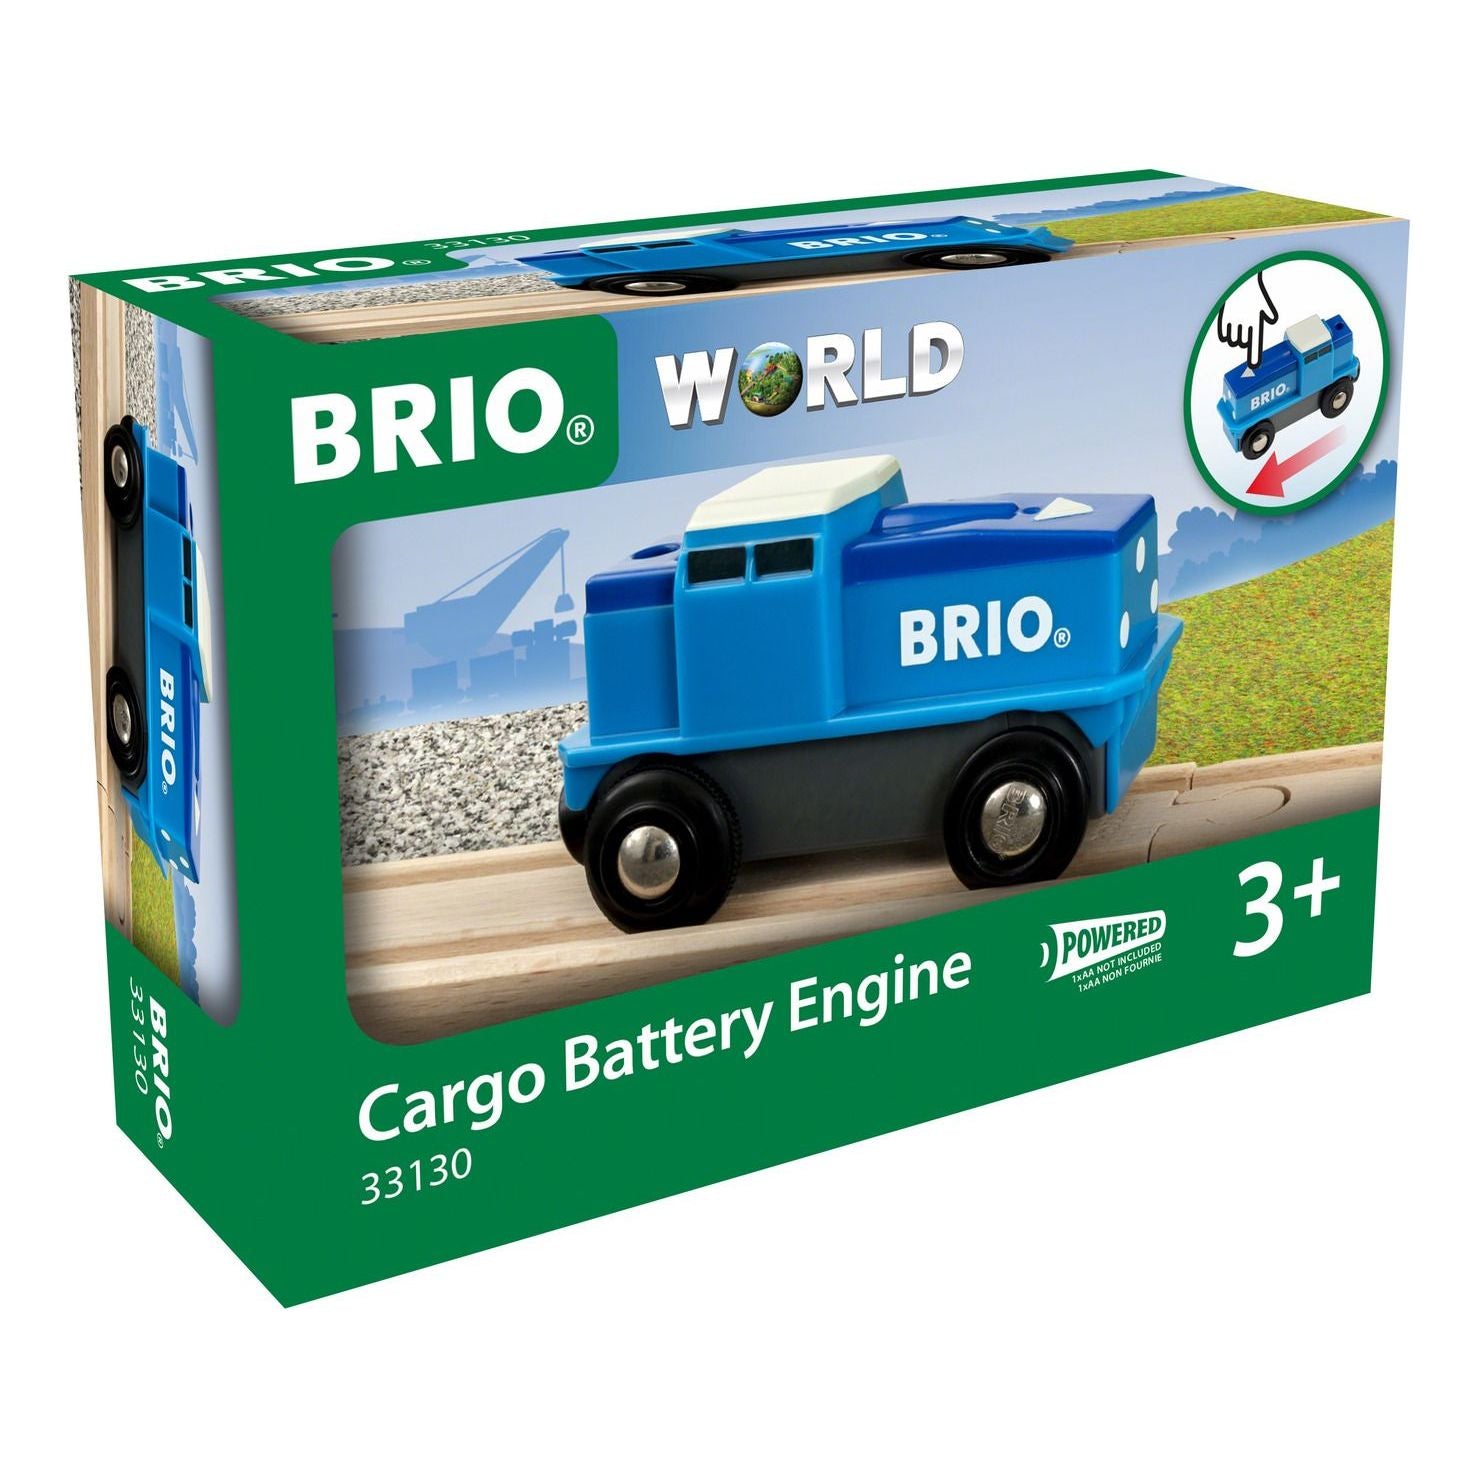 Brio Cargo Battery Engine BRIO